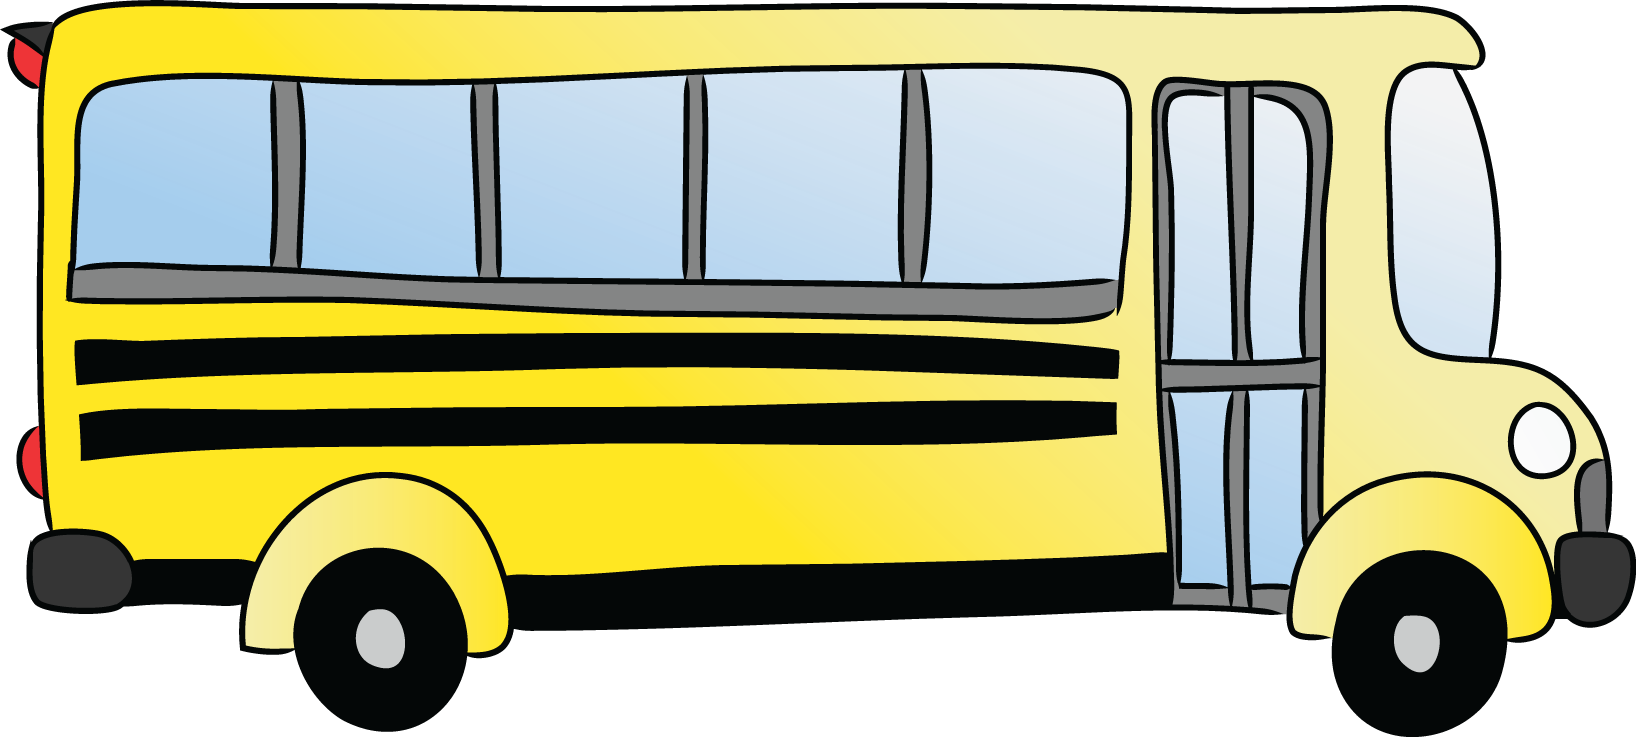 Free Cartoon School Bus Clip  - School Bus Clipart Free